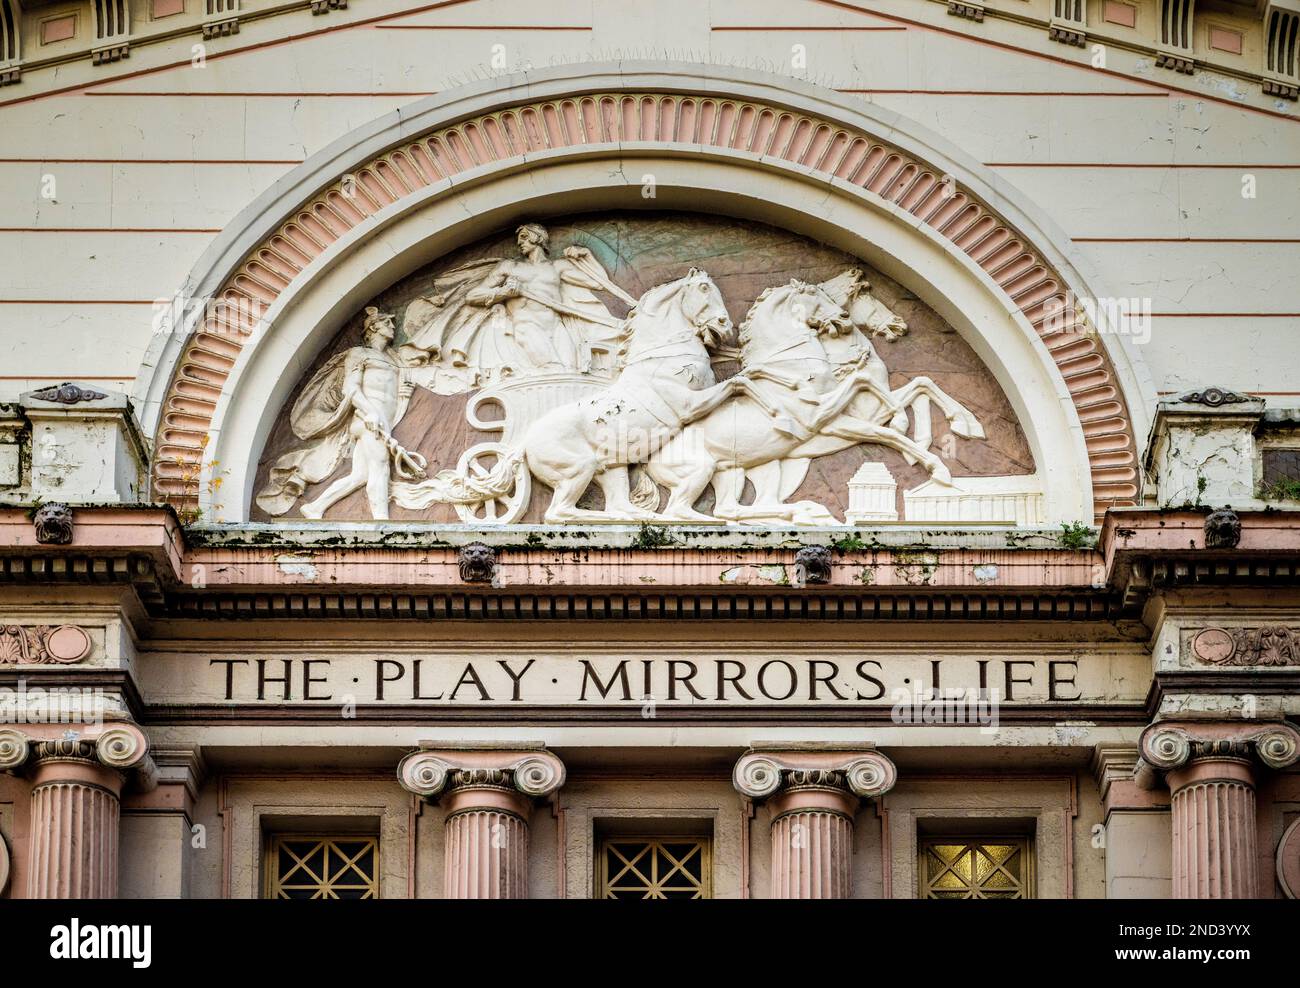 La maison de l'Opéra de Manchester entablature avec la frise a écrit "THE PLAY MIRRORS LIFE". Banque D'Images